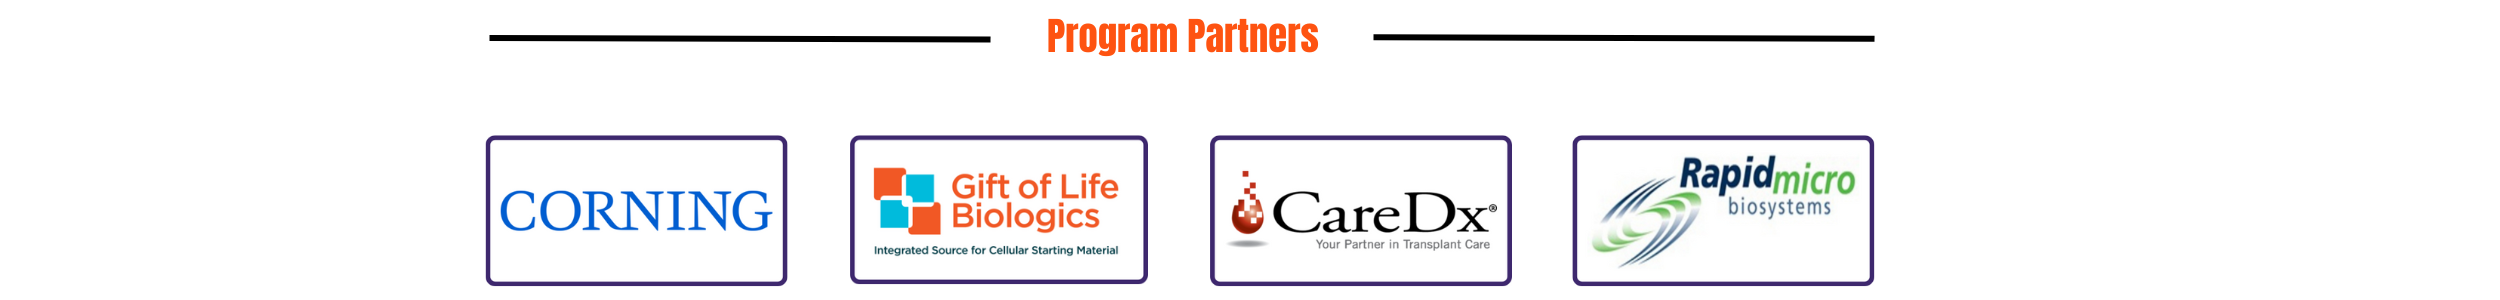 Program Partner Banner